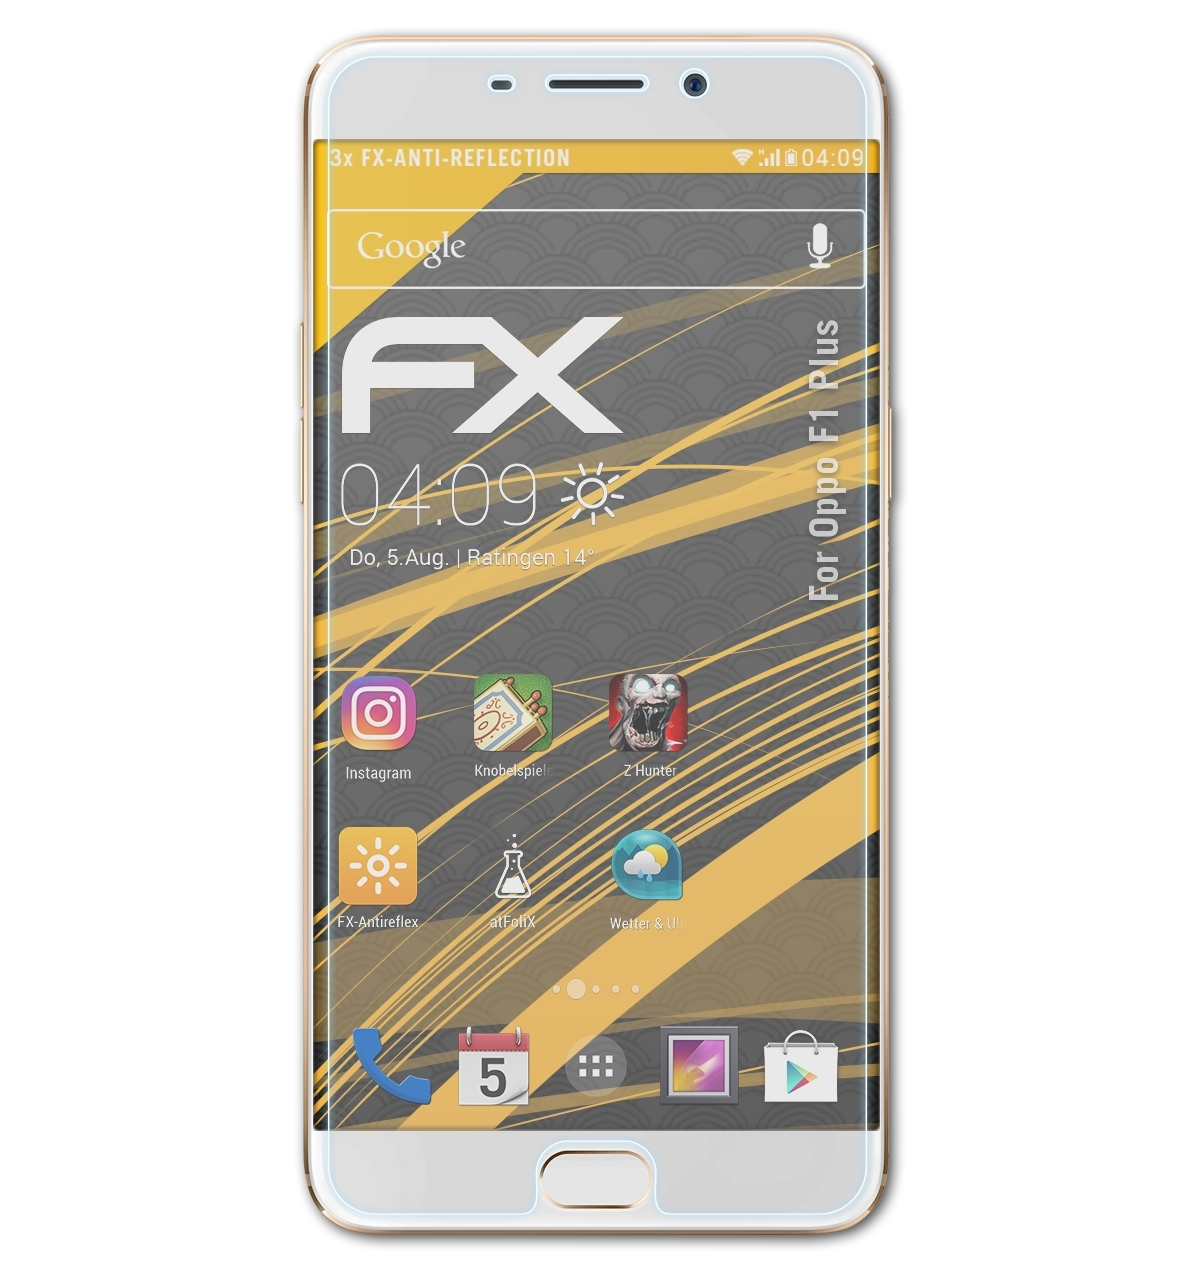 Oppo Displayschutz(für FX-Antireflex Plus) F1 ATFOLIX 3x